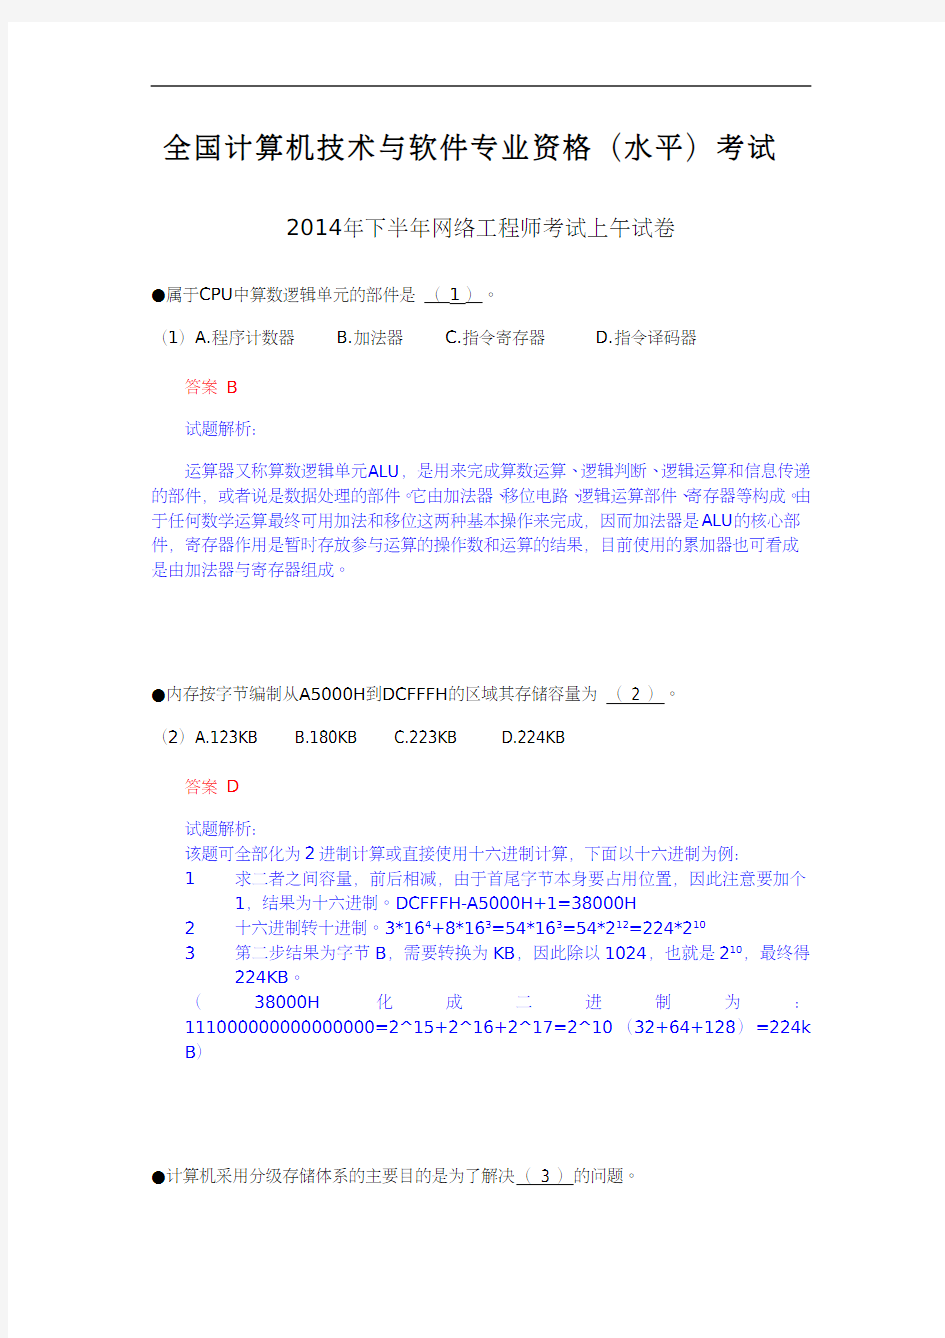 2014年11月网络工程师真题详解(上午)